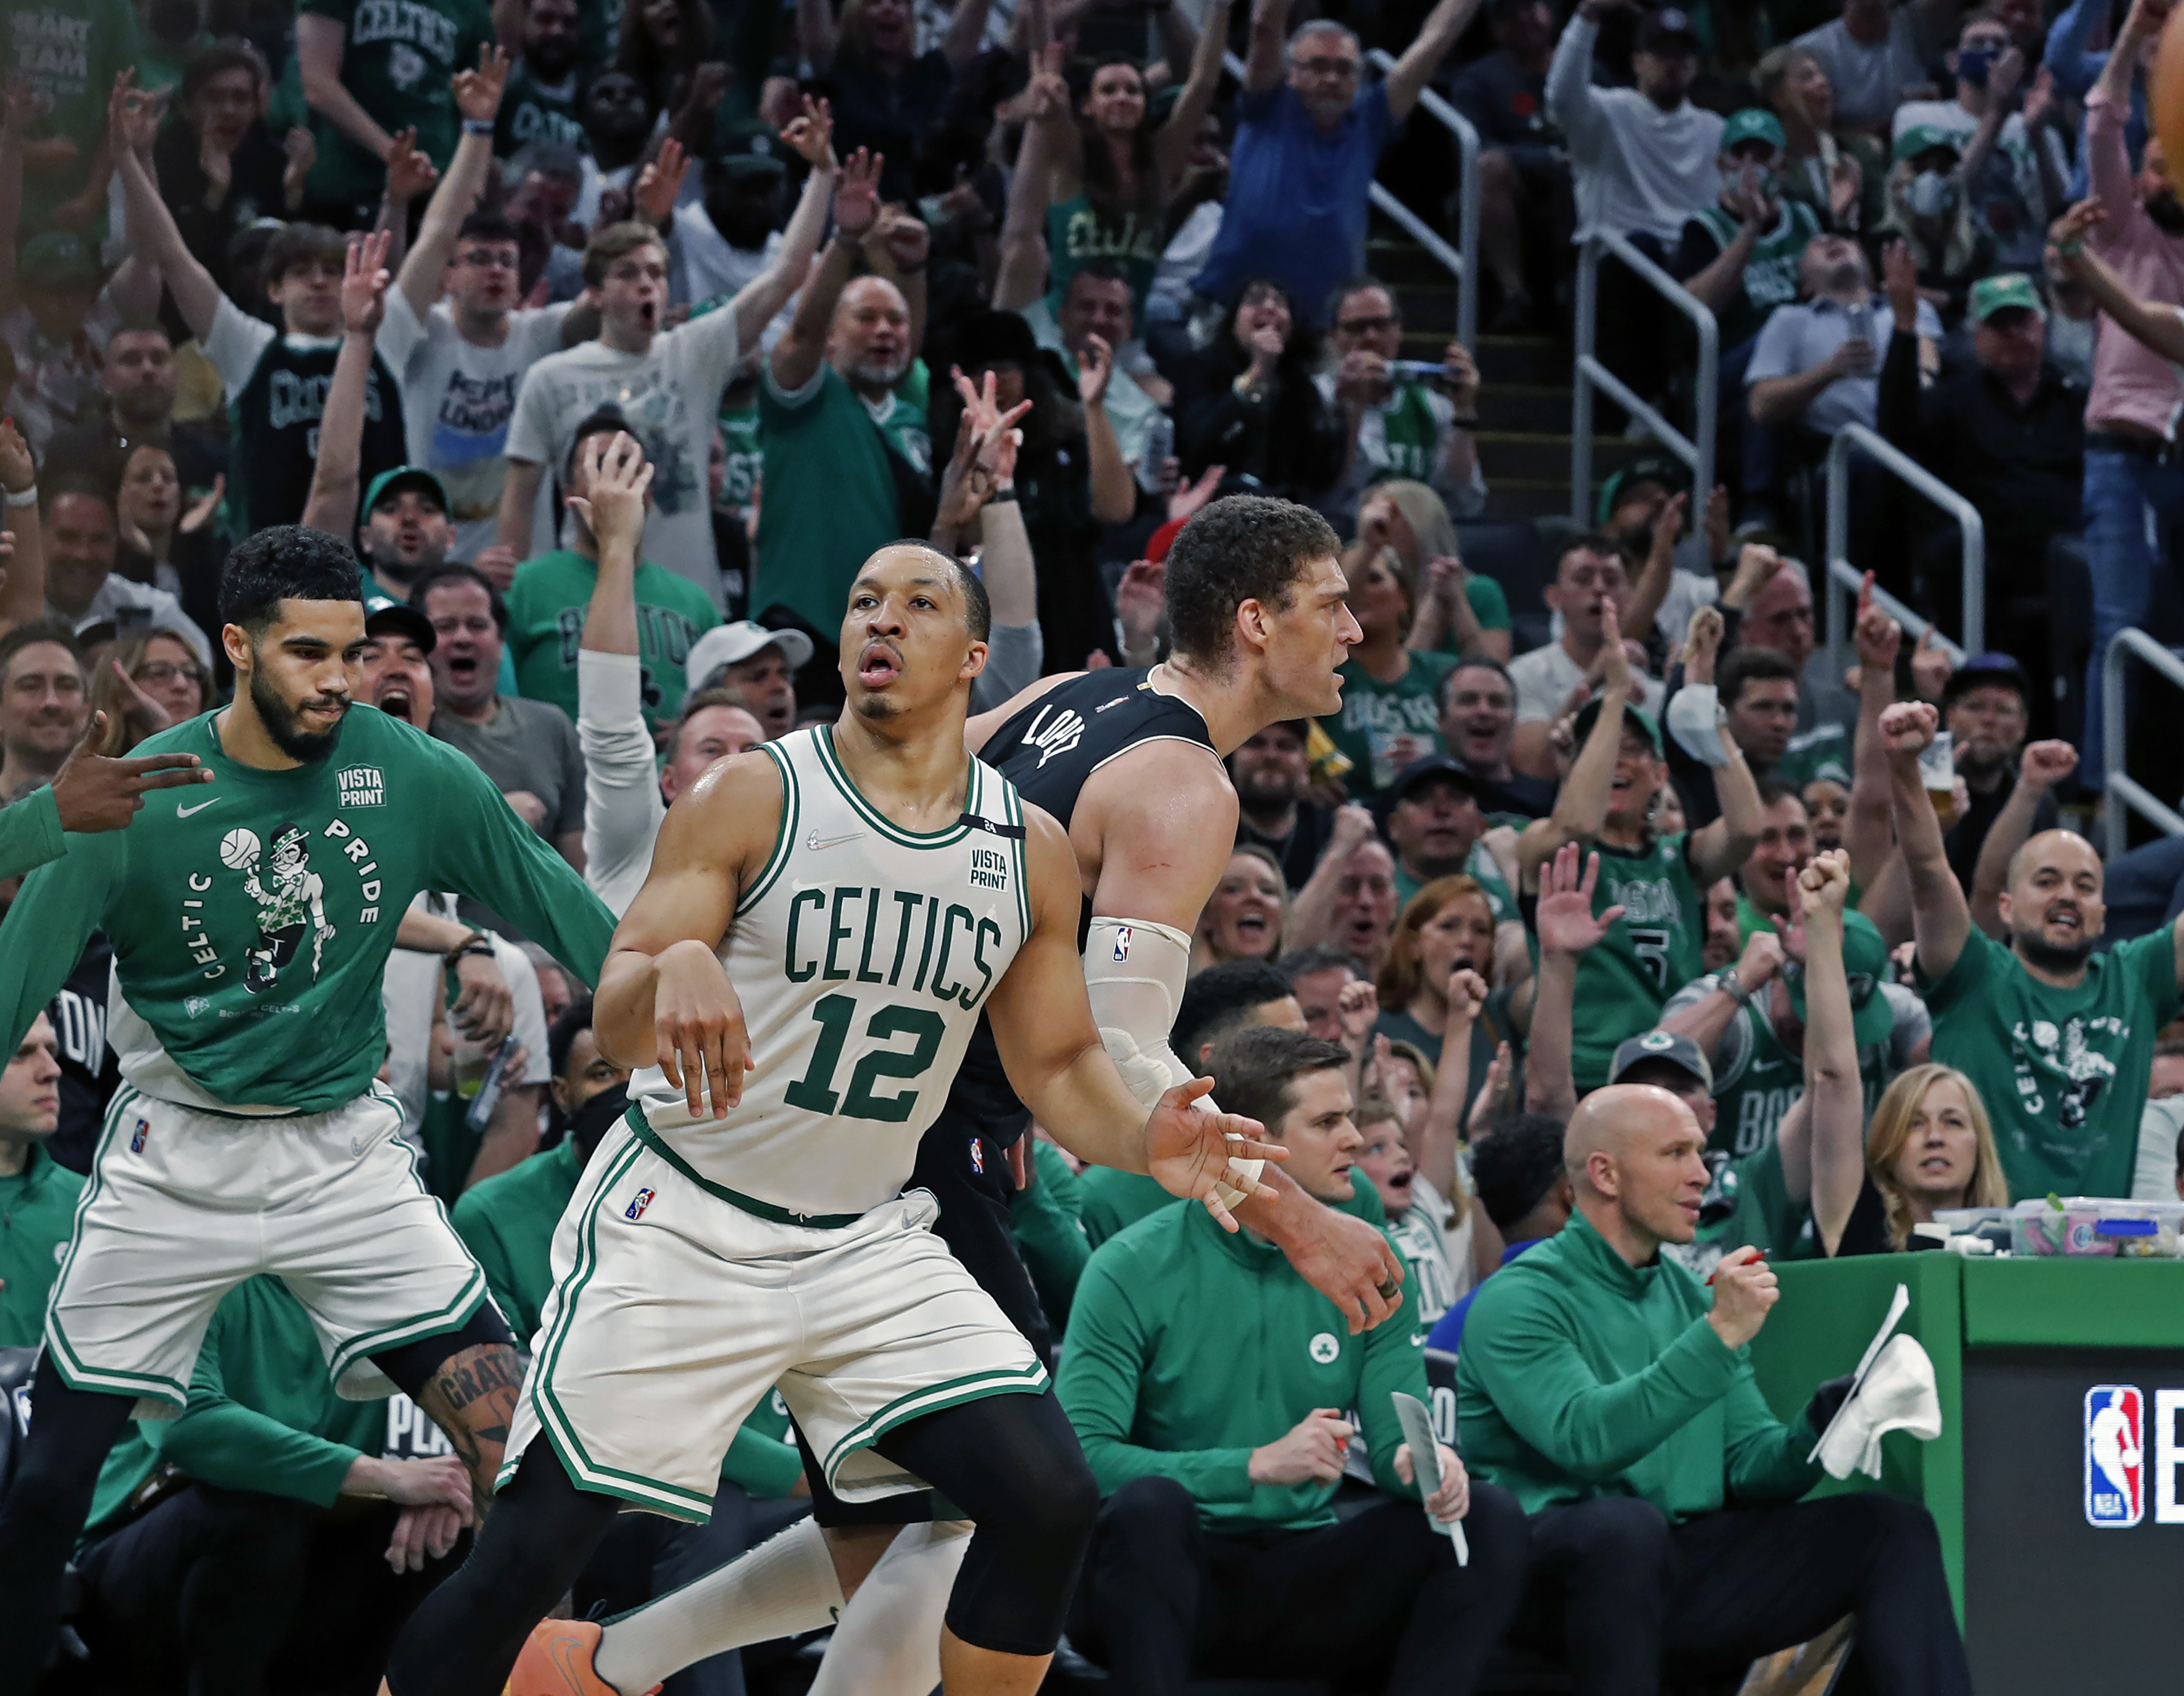 Grant Williams shows fight in Game 2 loss - CelticsBlog